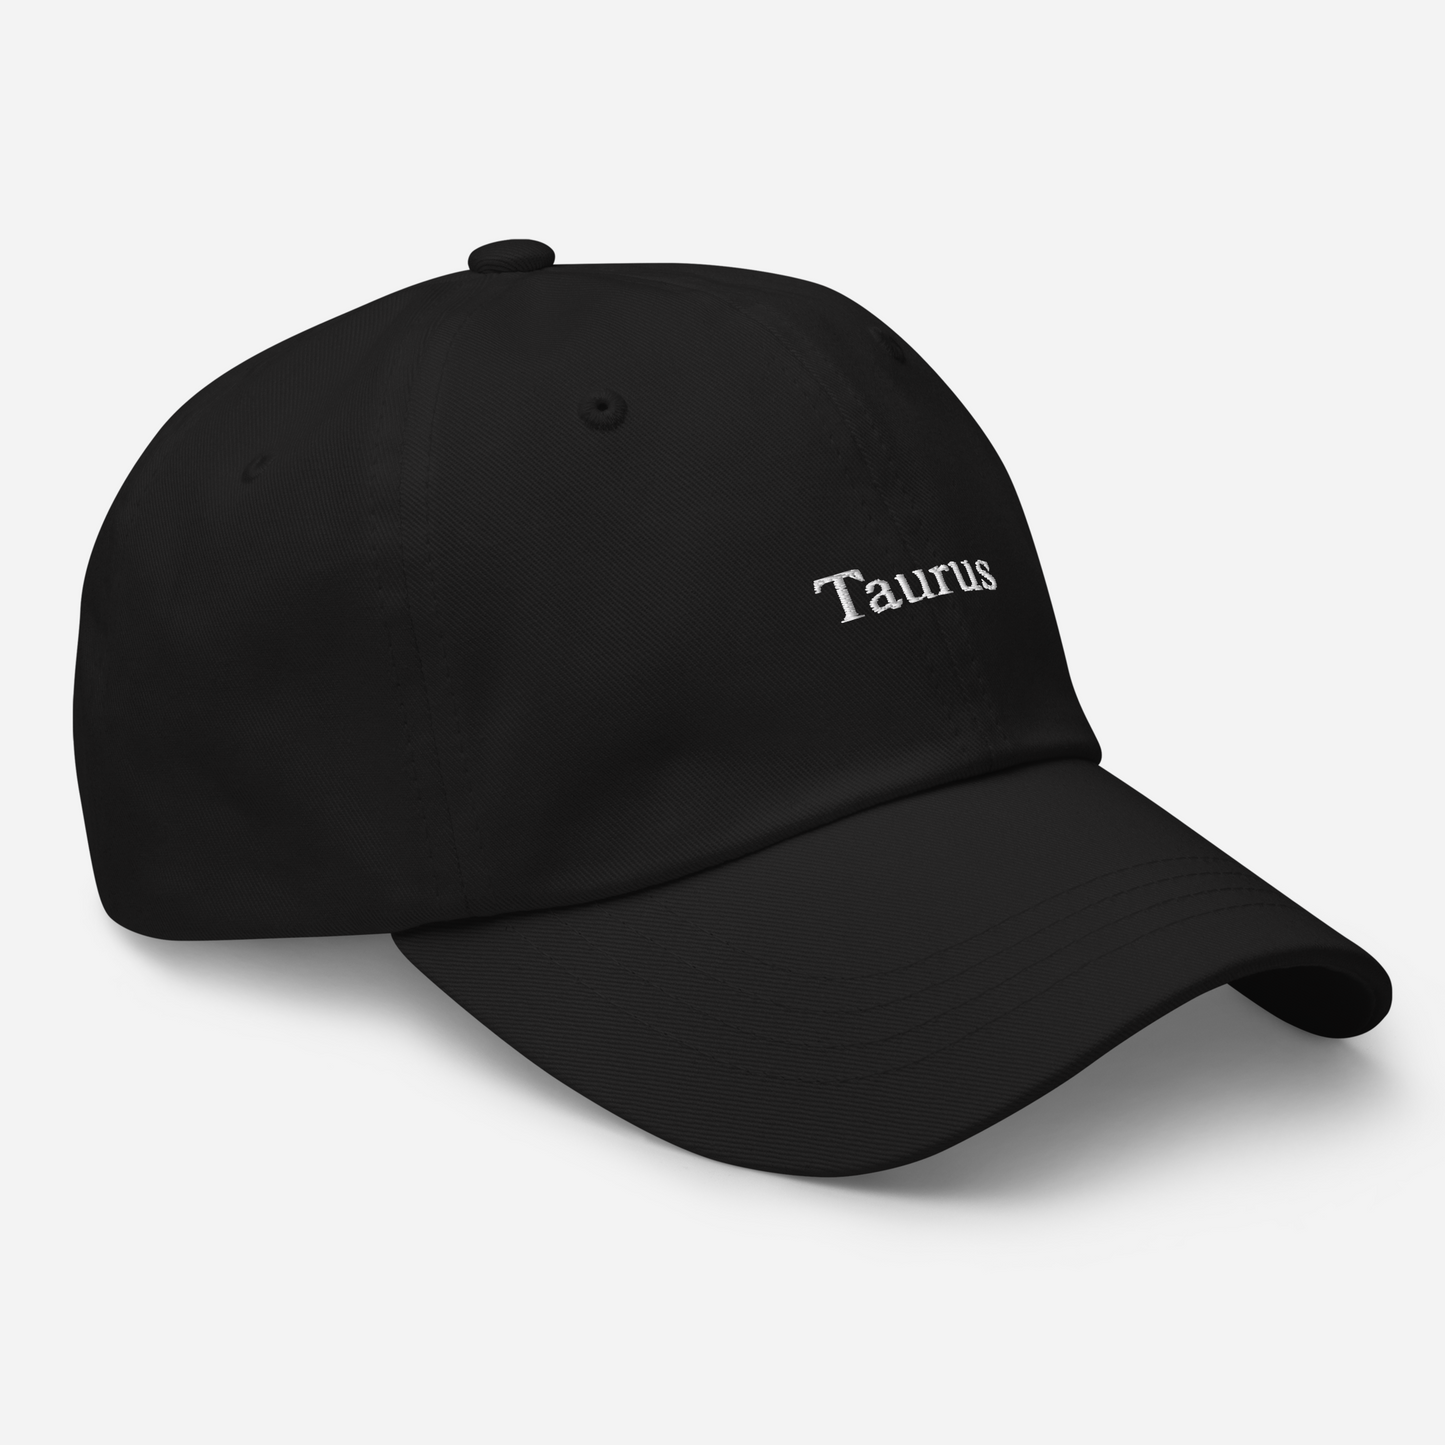 Taurus Dad Hat Cap